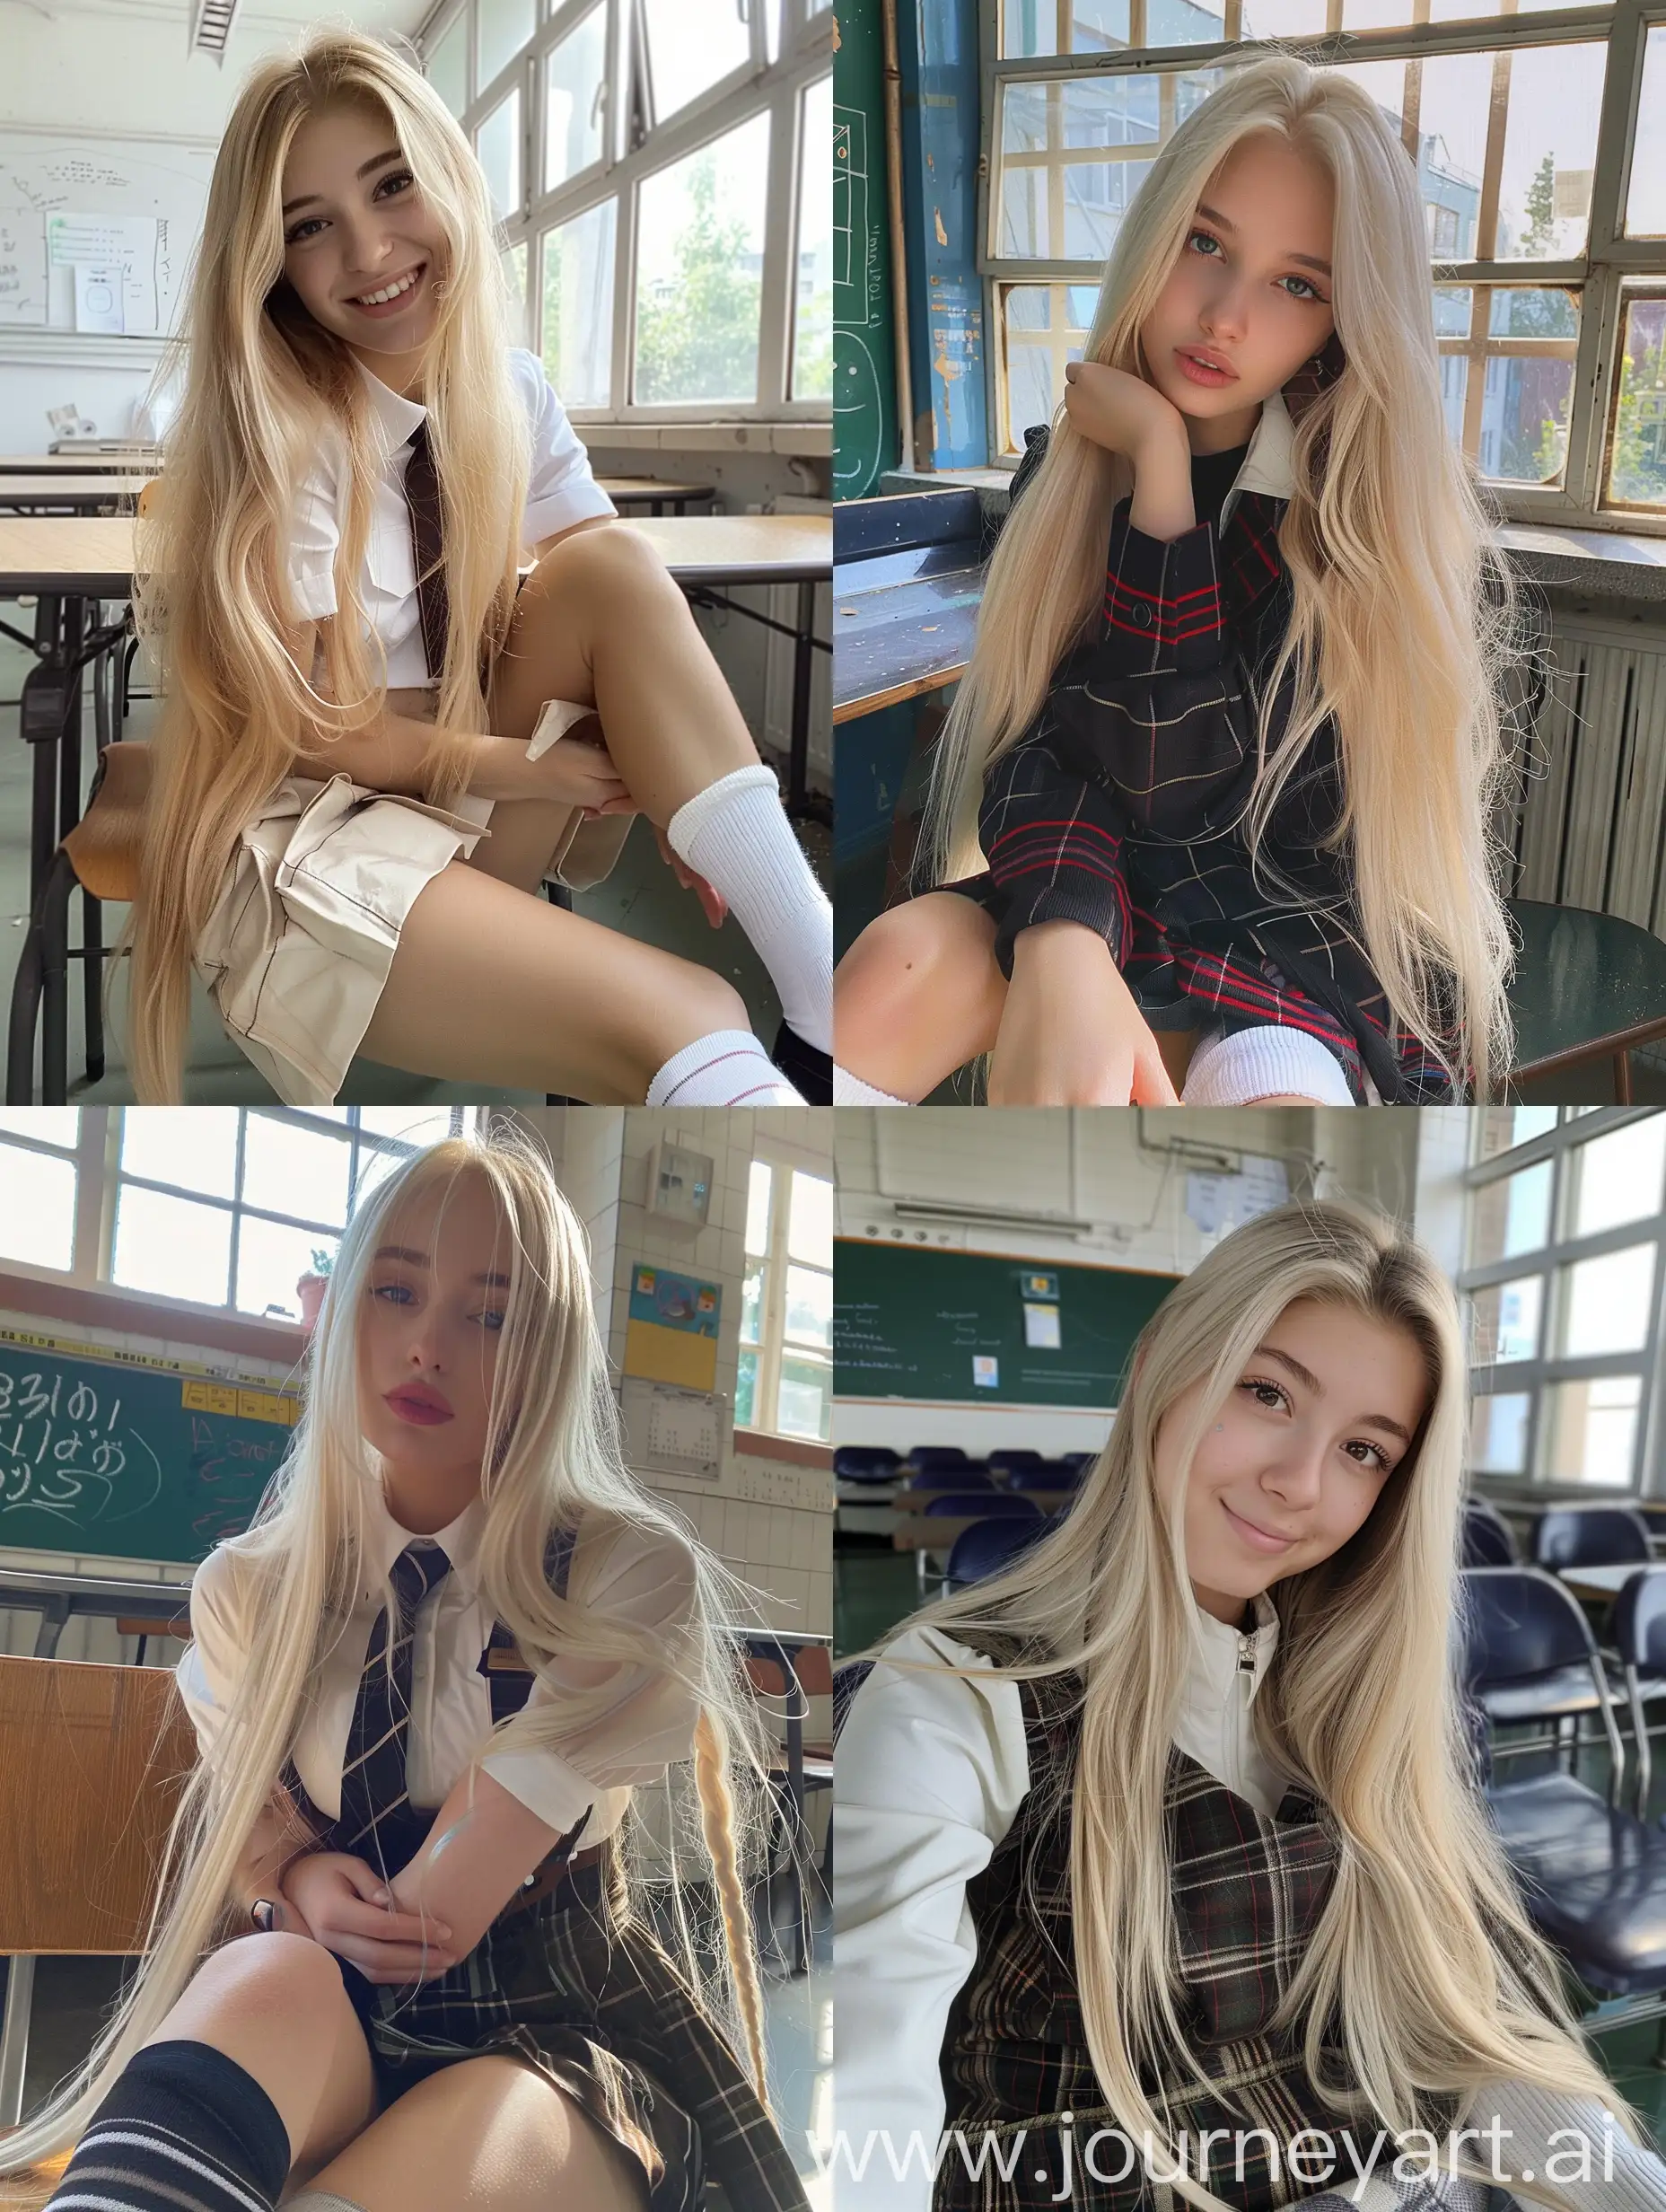 Ukrainian-Influencer-in-School-Uniform-Taking-Natural-Selfie-with-iPhone